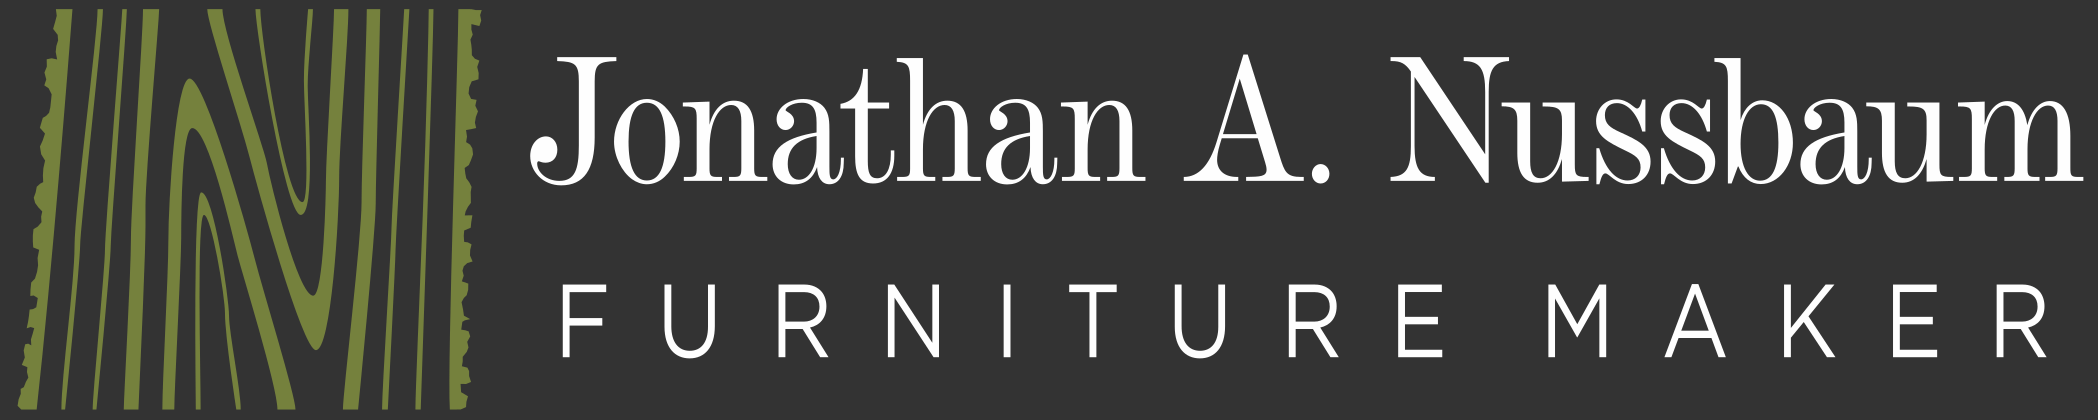 Jonathan A. Nussbaum – Furniture Maker